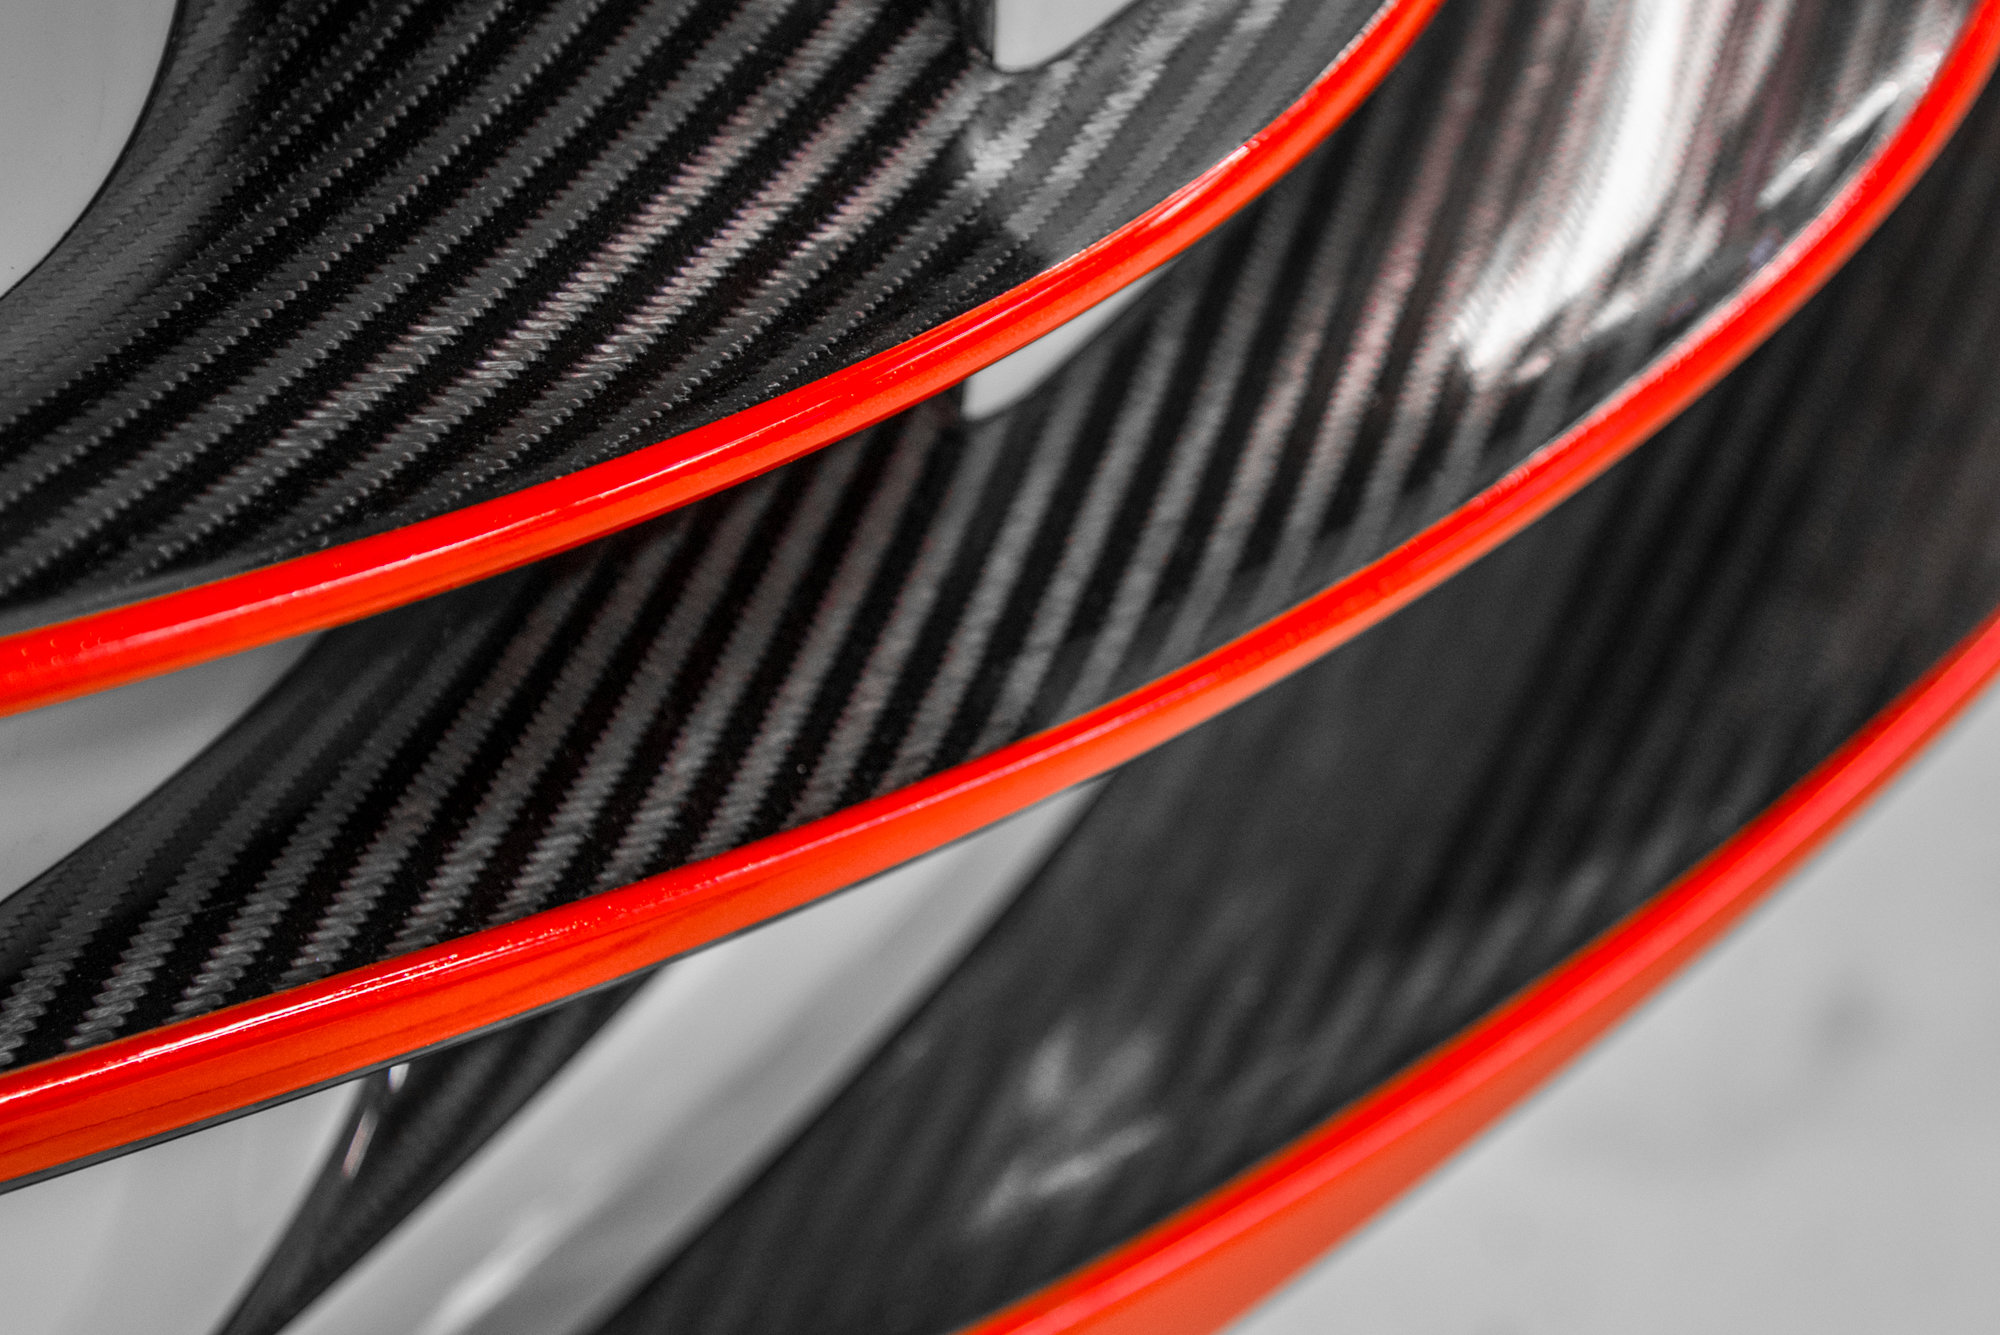 Koenigsegg poodhaluje své trumfy pro autosalon v Ženevě